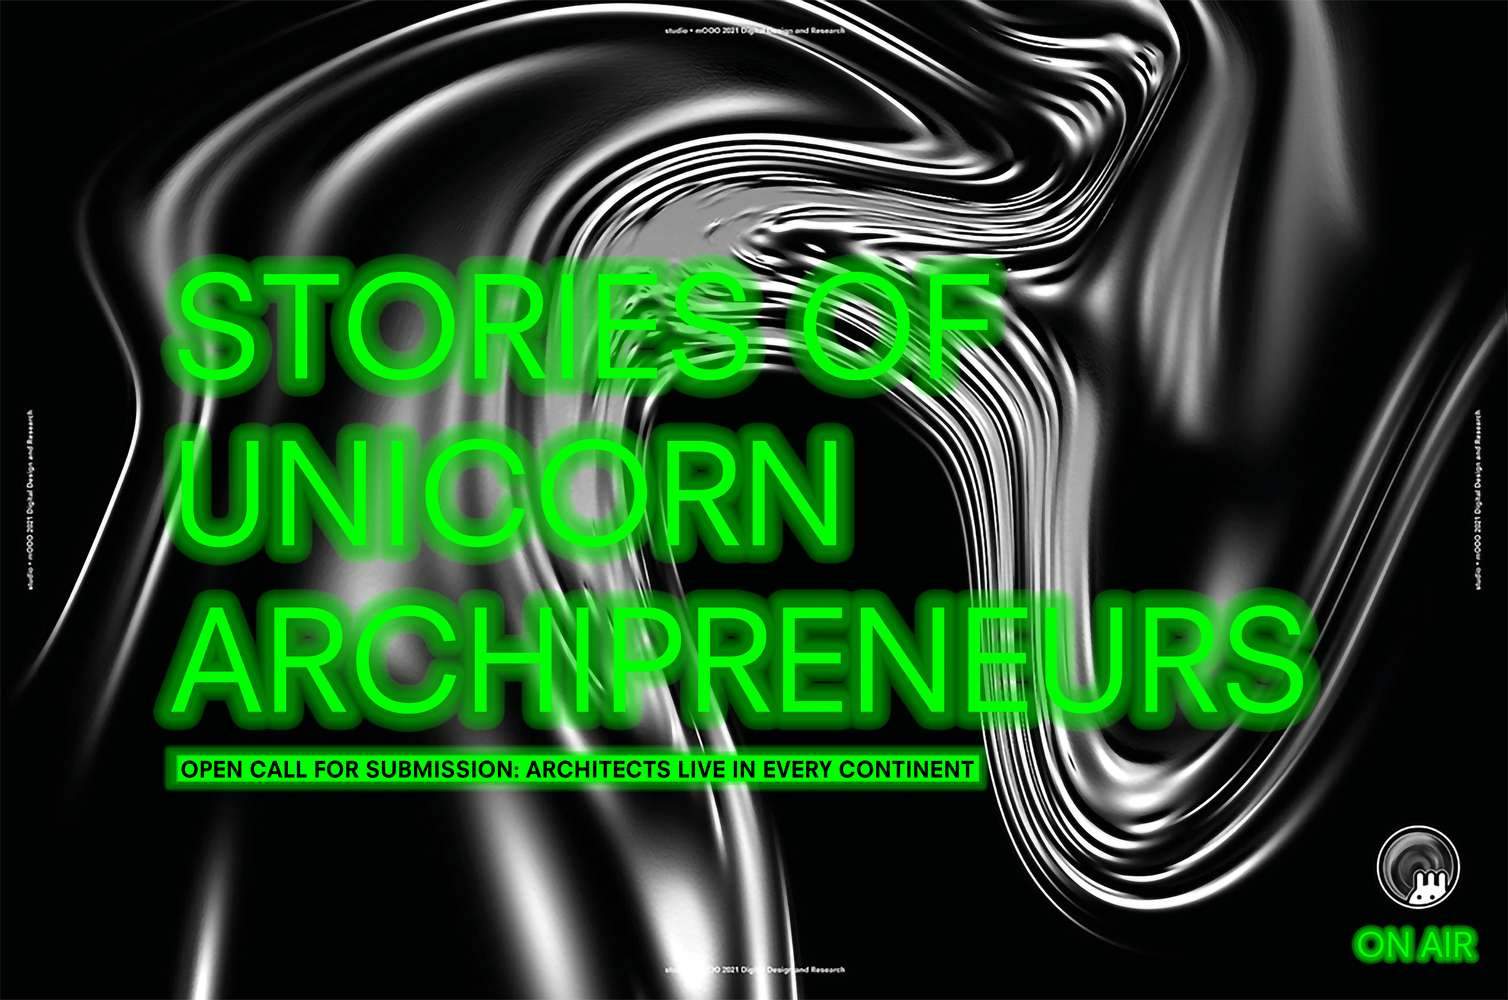 دعوة مفتوحة لتقديم الفيديو - قصص من رواد الأعمال المعماريين الصاعدين | Open call for video submission - stories from unicorn archipreneurs